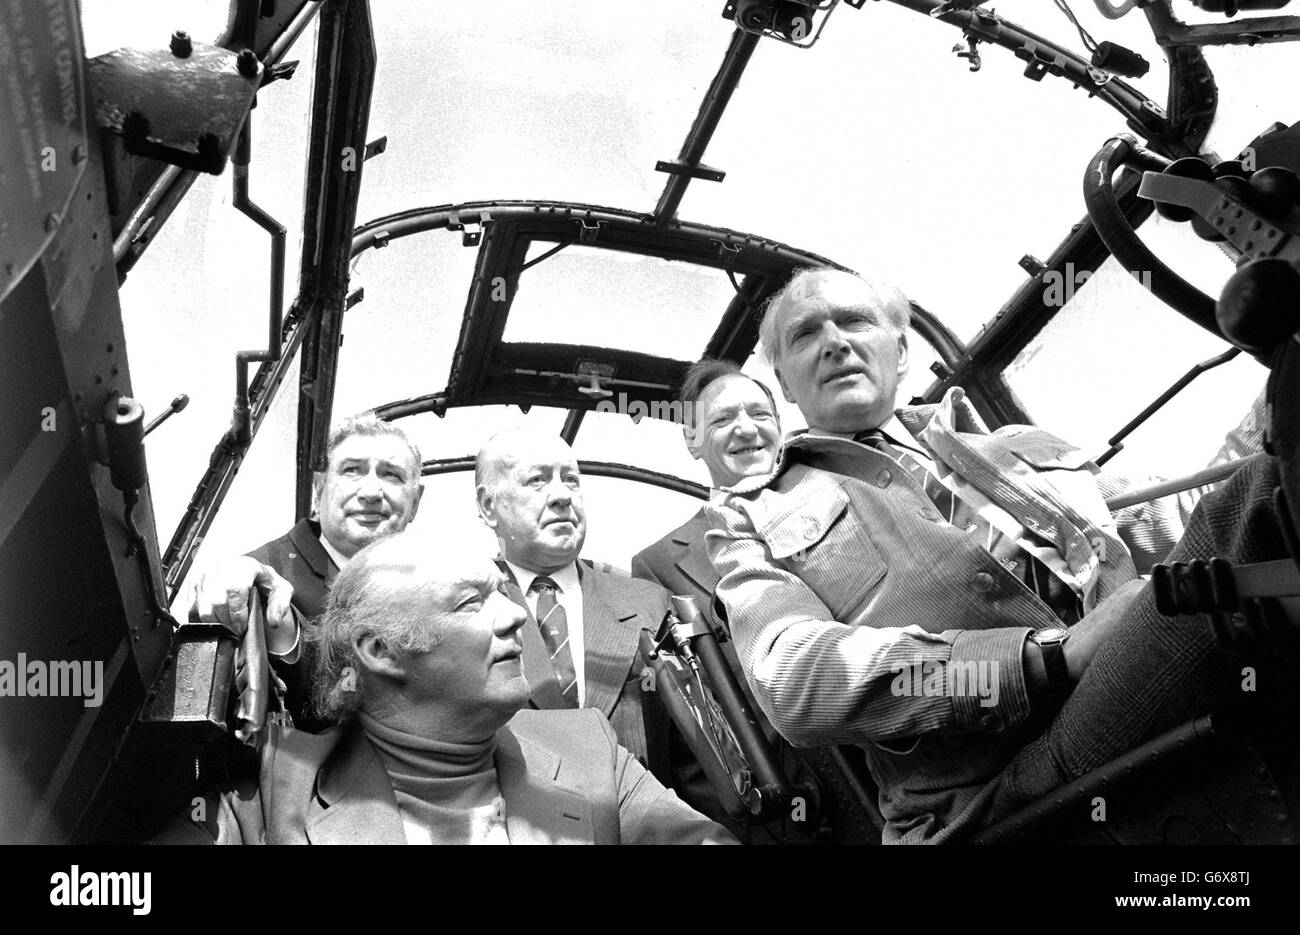 Im Cockpit des letzten operationellen Lancaster bei RAF Scampton befinden sich fünf Überlebende (von links) George Chalmers (Mobilfunkbetreiber), Ivan Whittaker (Ingenieur), Jack Buckley (Gunner), Bill Howarth (Gunner) und Bill Townsend (Pilot) des Dambusters-Angriffs auf das industrielle Herz Deutschlands. *02/04/04: Eine Sammlung der Medaillen, die Ivan Whittaker gewonnen hat, wurde im Vorfeld der Auktion im Laufe dieses Monats ausgestellt. Während des Zweiten Weltkriegs erhielt er zweimal ein Distinguished Flying Cross (DFC) - der einzige Flugingenieur der RAF, der zwei solche Auszeichnungen erhielt. Stockfoto